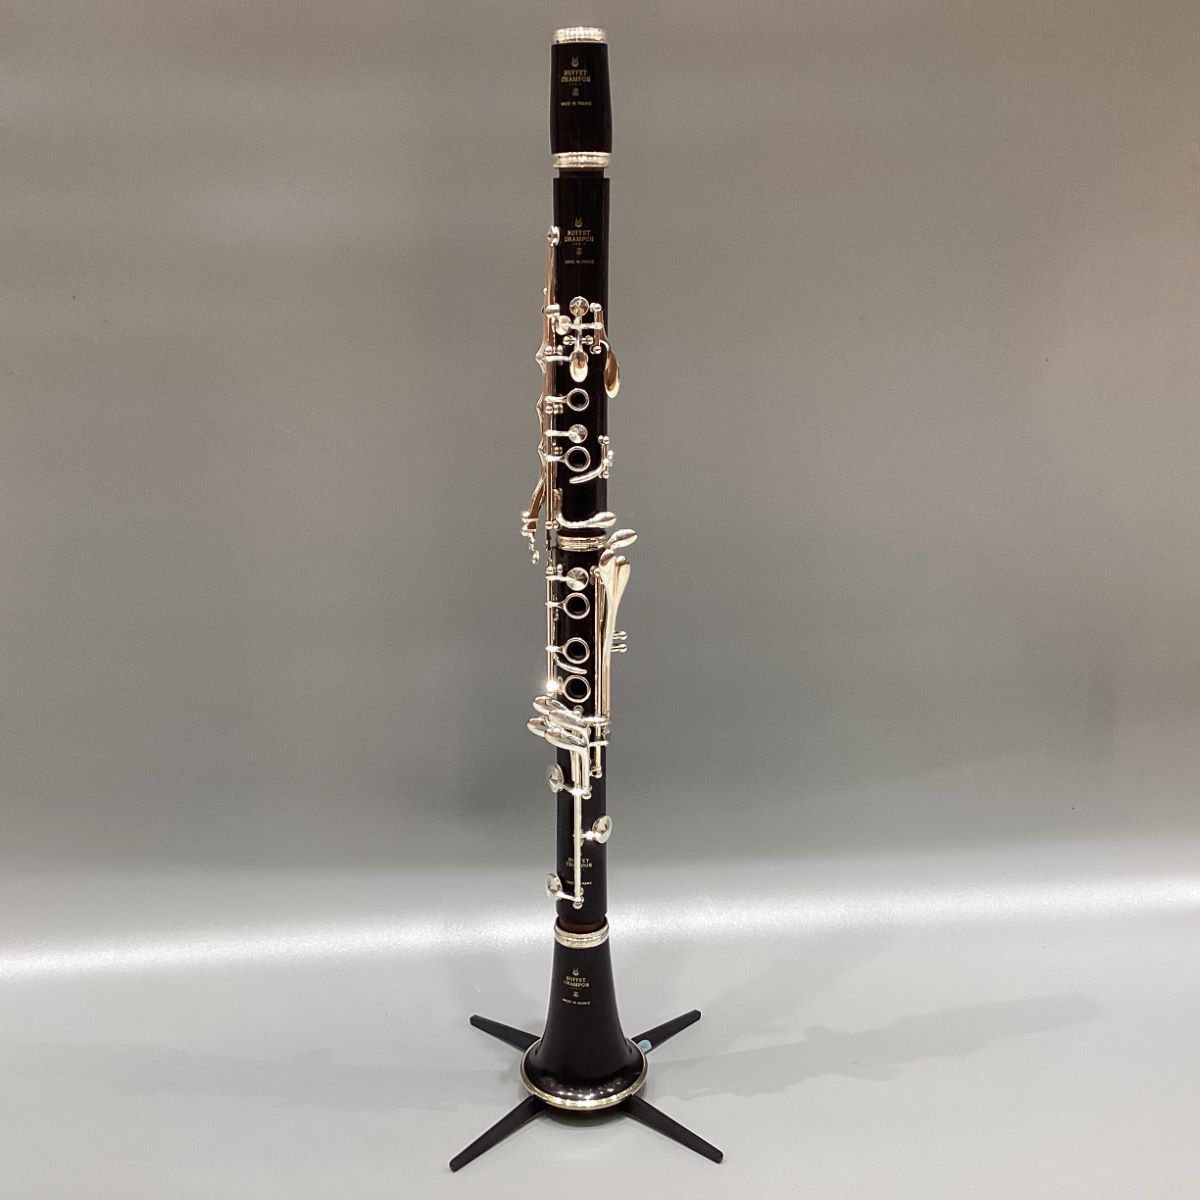 B♭クラリネット R13 （ビュッフェクランポン） - 楽器/器材